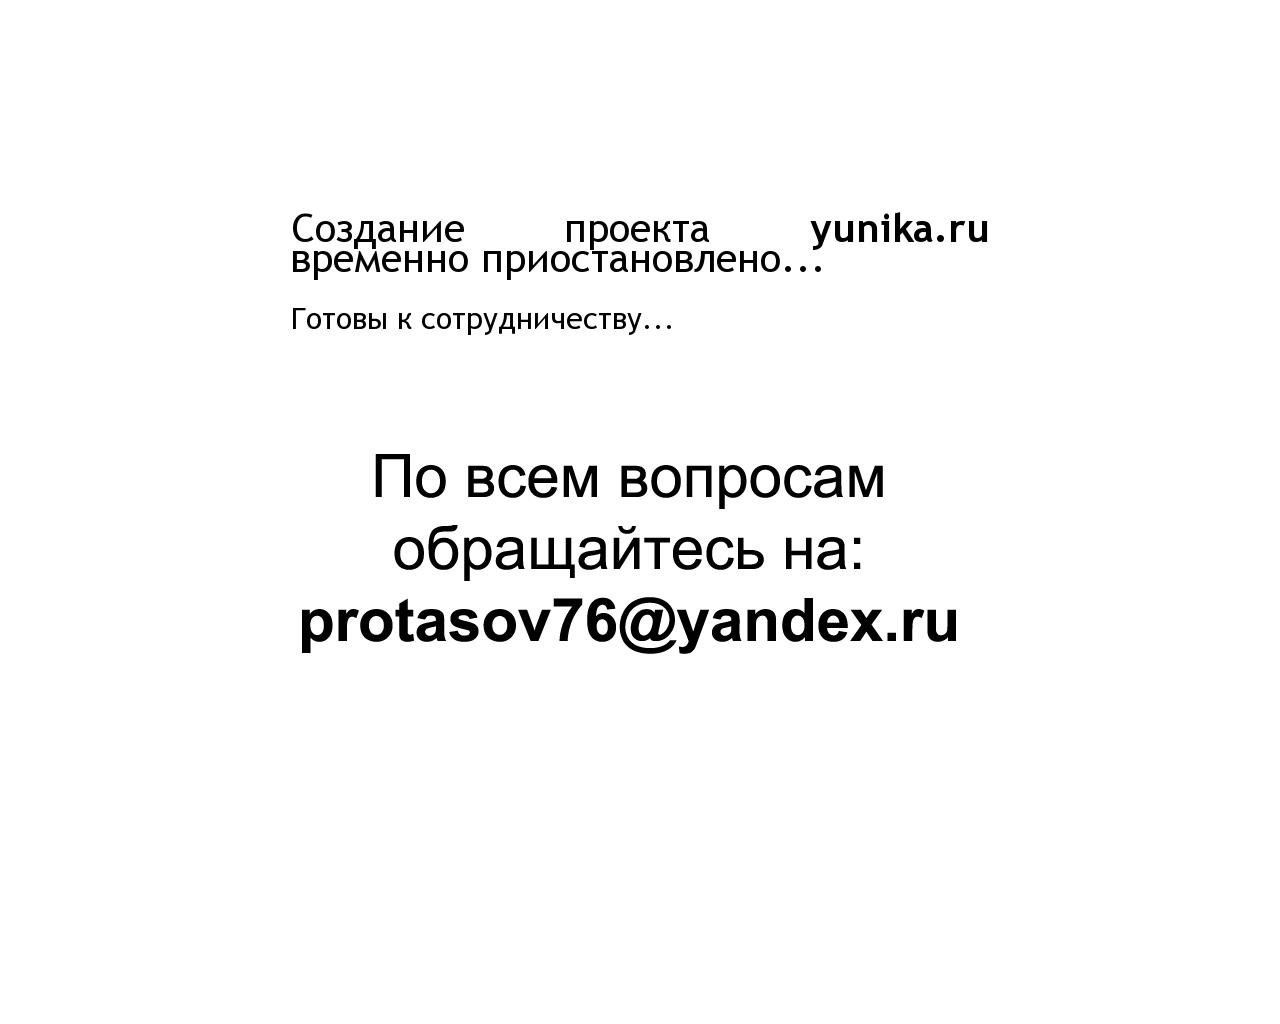 Изображение сайта yunika.ru в разрешении 1280x1024